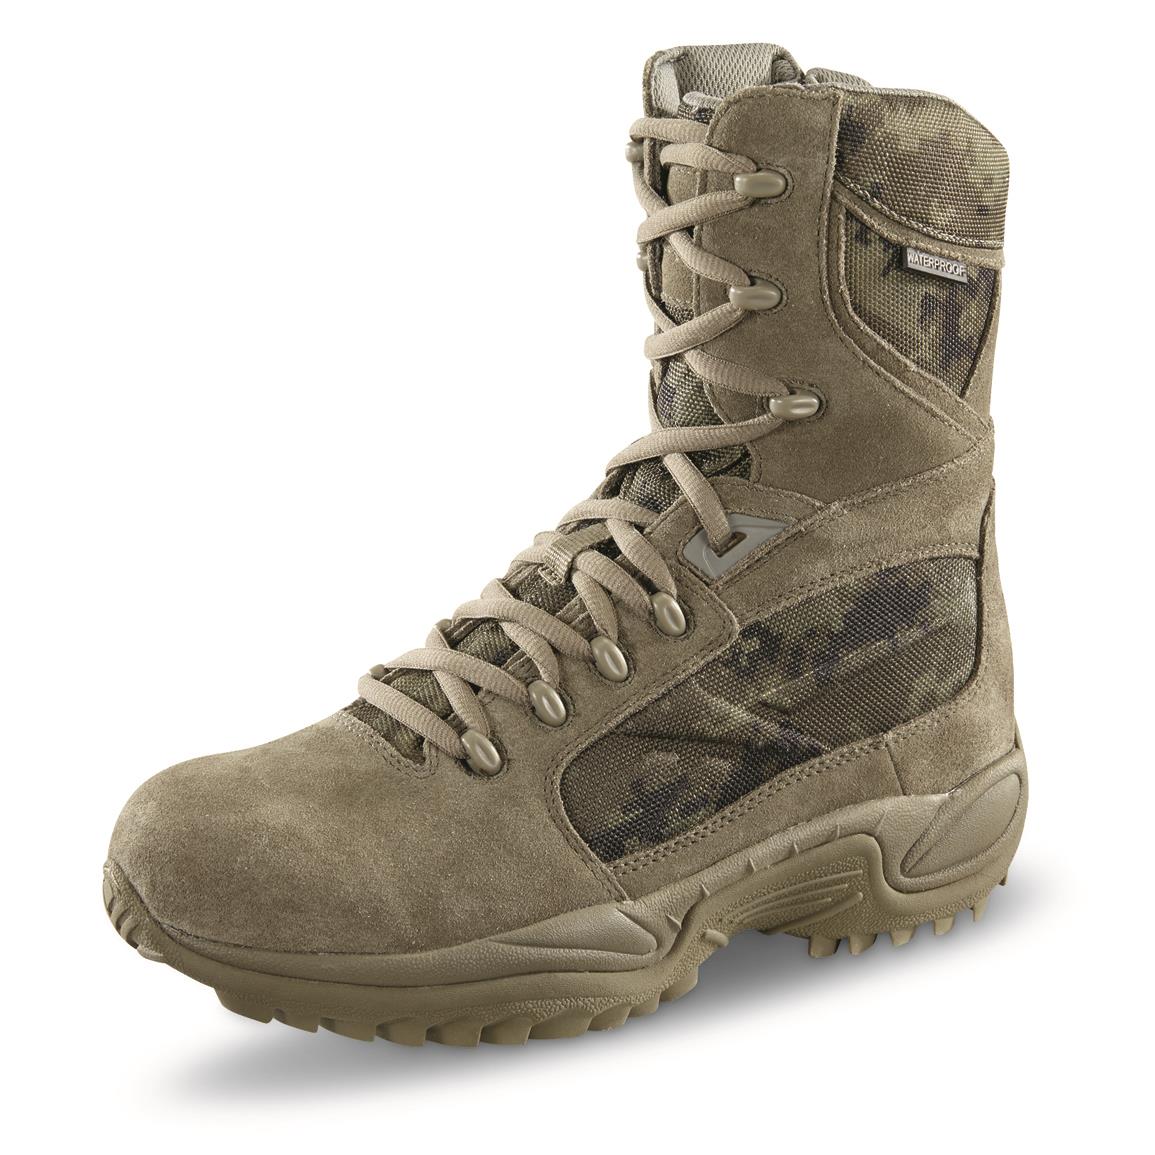 Reebok Men's ERT Waterproof Tactical Boots - 282281, Combat & Tactical